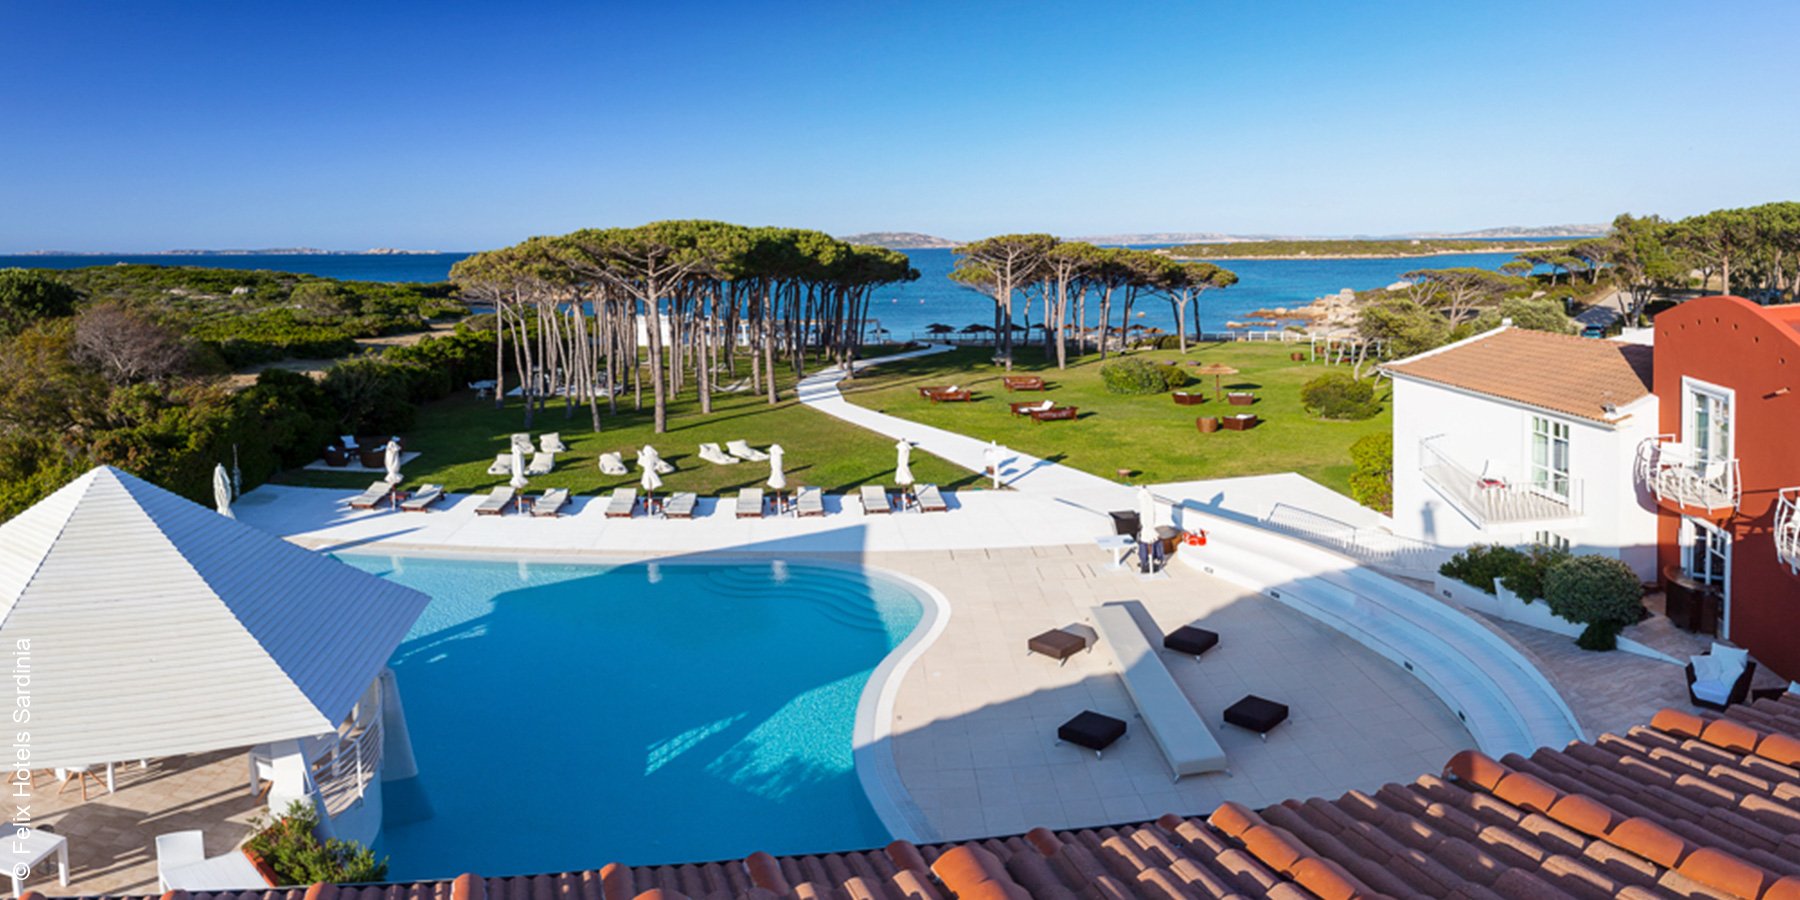 Hotel La Coluccia Hotel & Beach Club | Sardinien | Pool von oben | luxuszeit.com